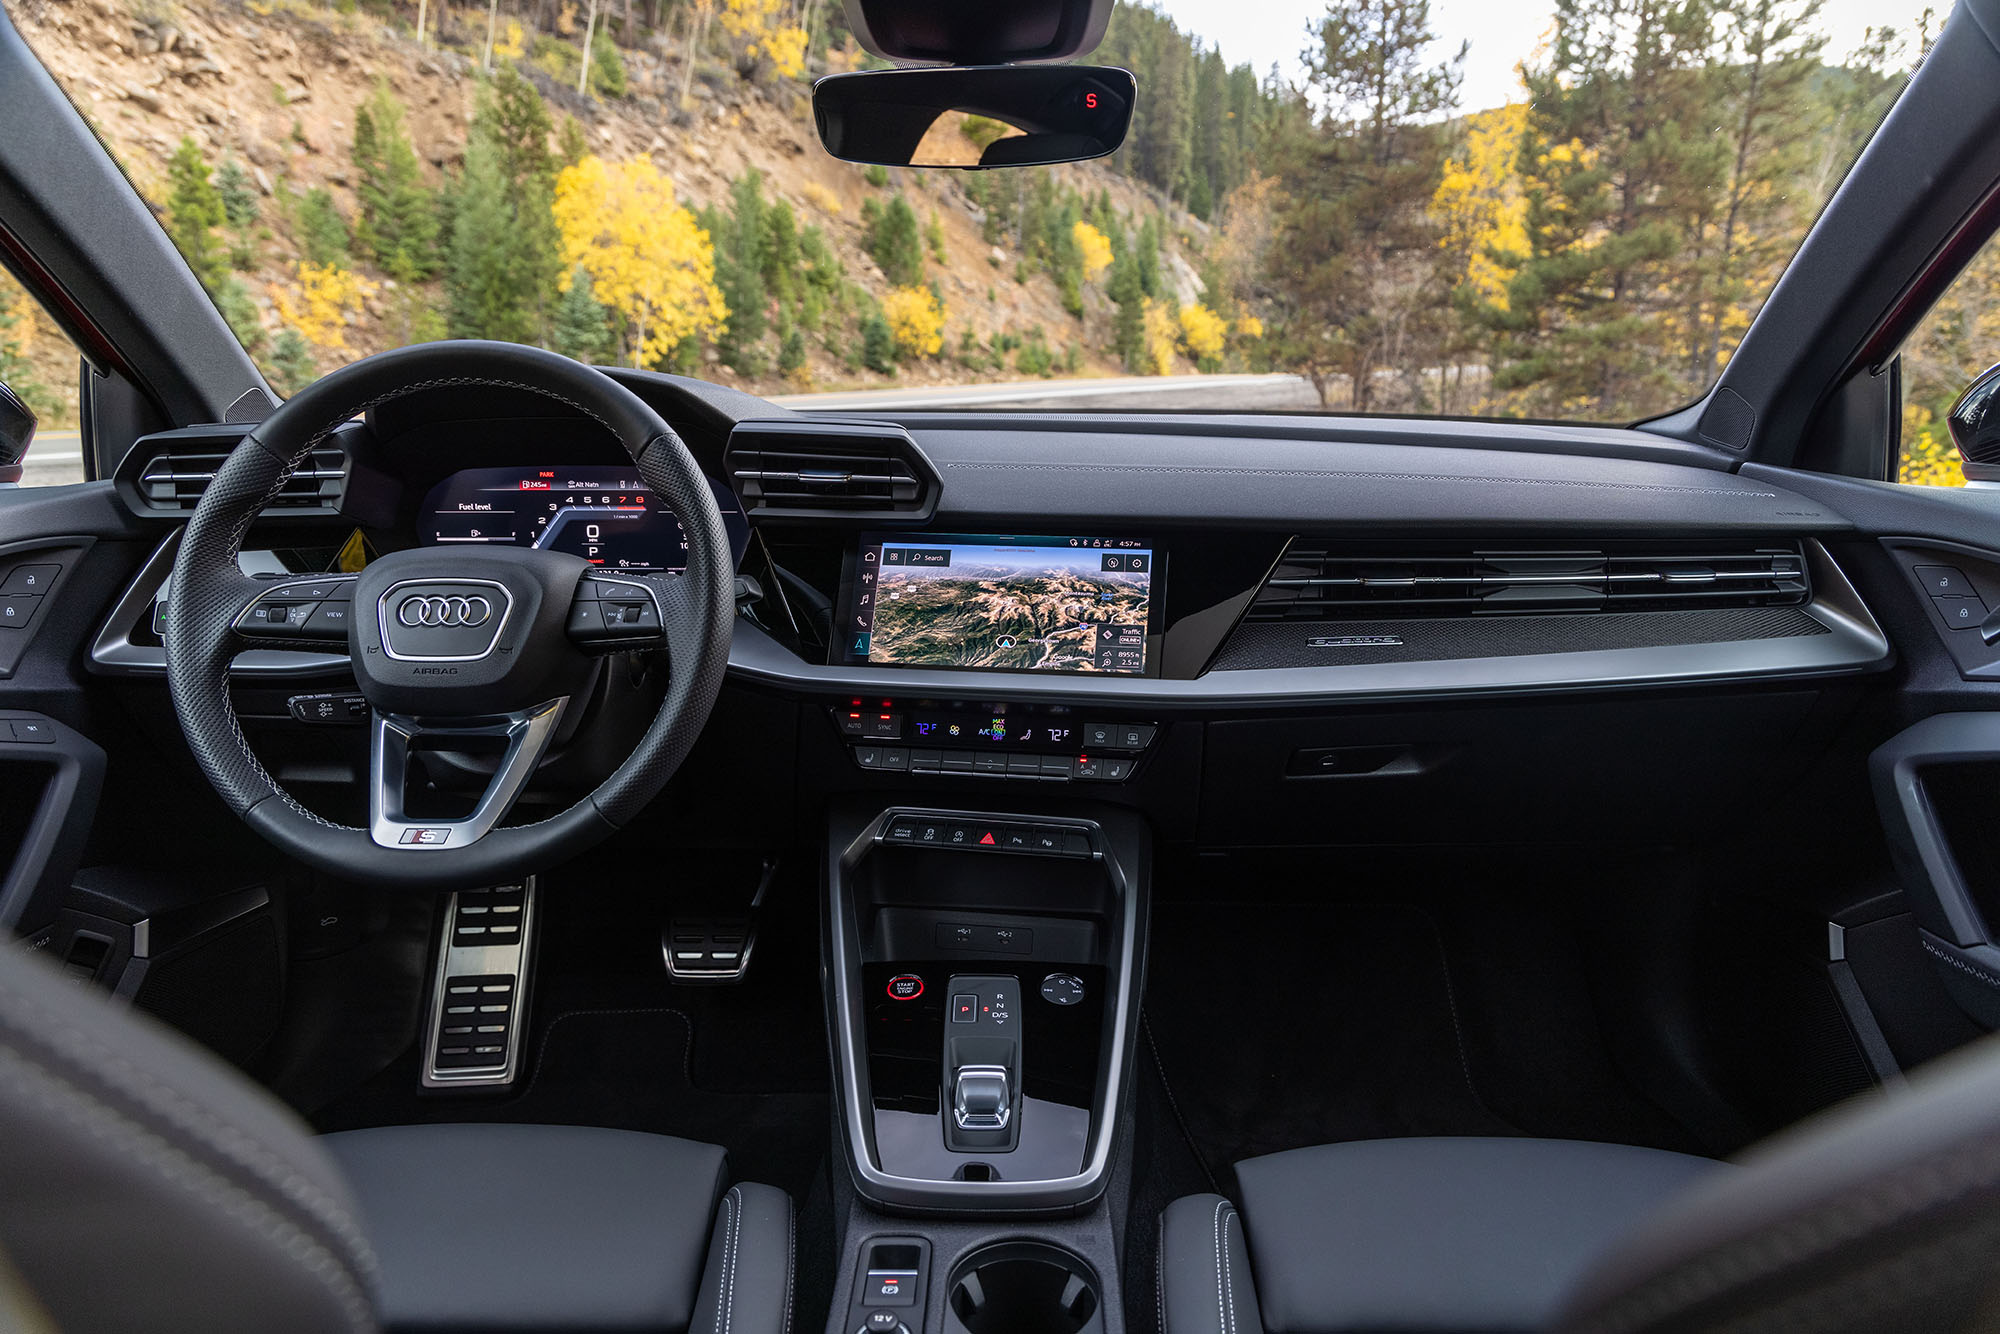 Audi S3 interior in black